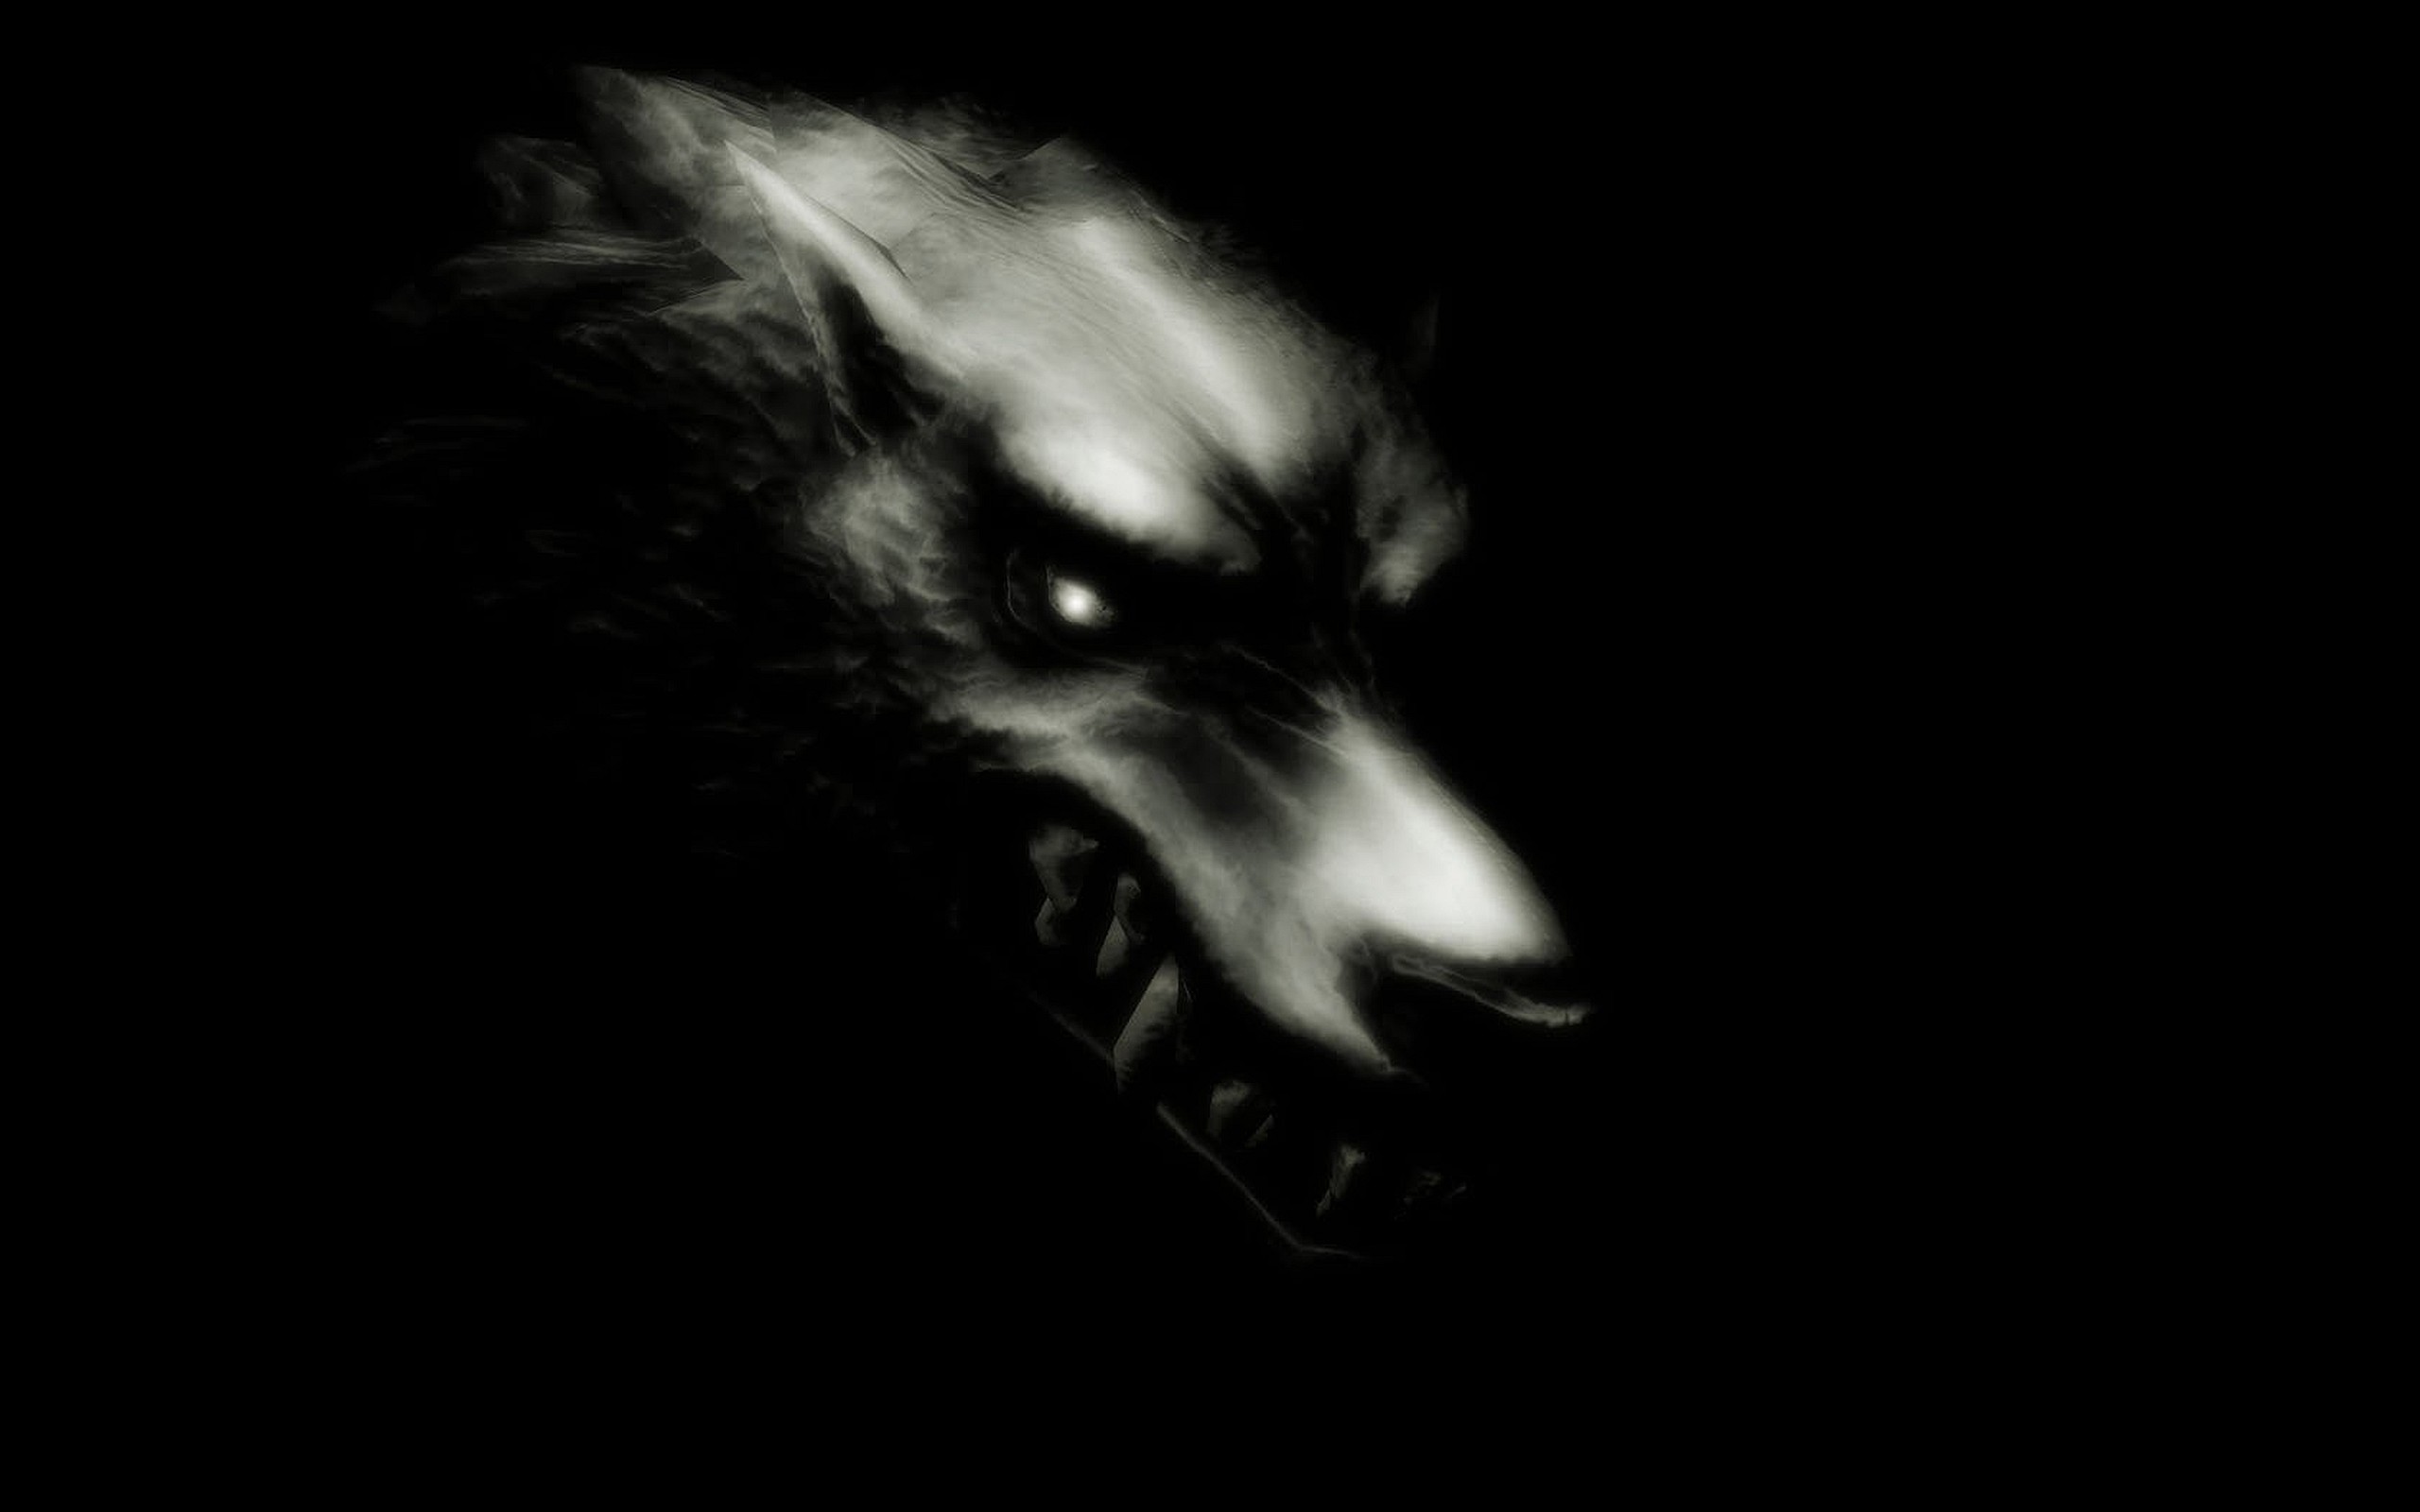 2560x1600 images of werewolves Werewolf HD Wallpaper Background For | HD Wallpapers |  Pinterest | Hd wallpaper, Wallpaper backgrounds and Wallpaper